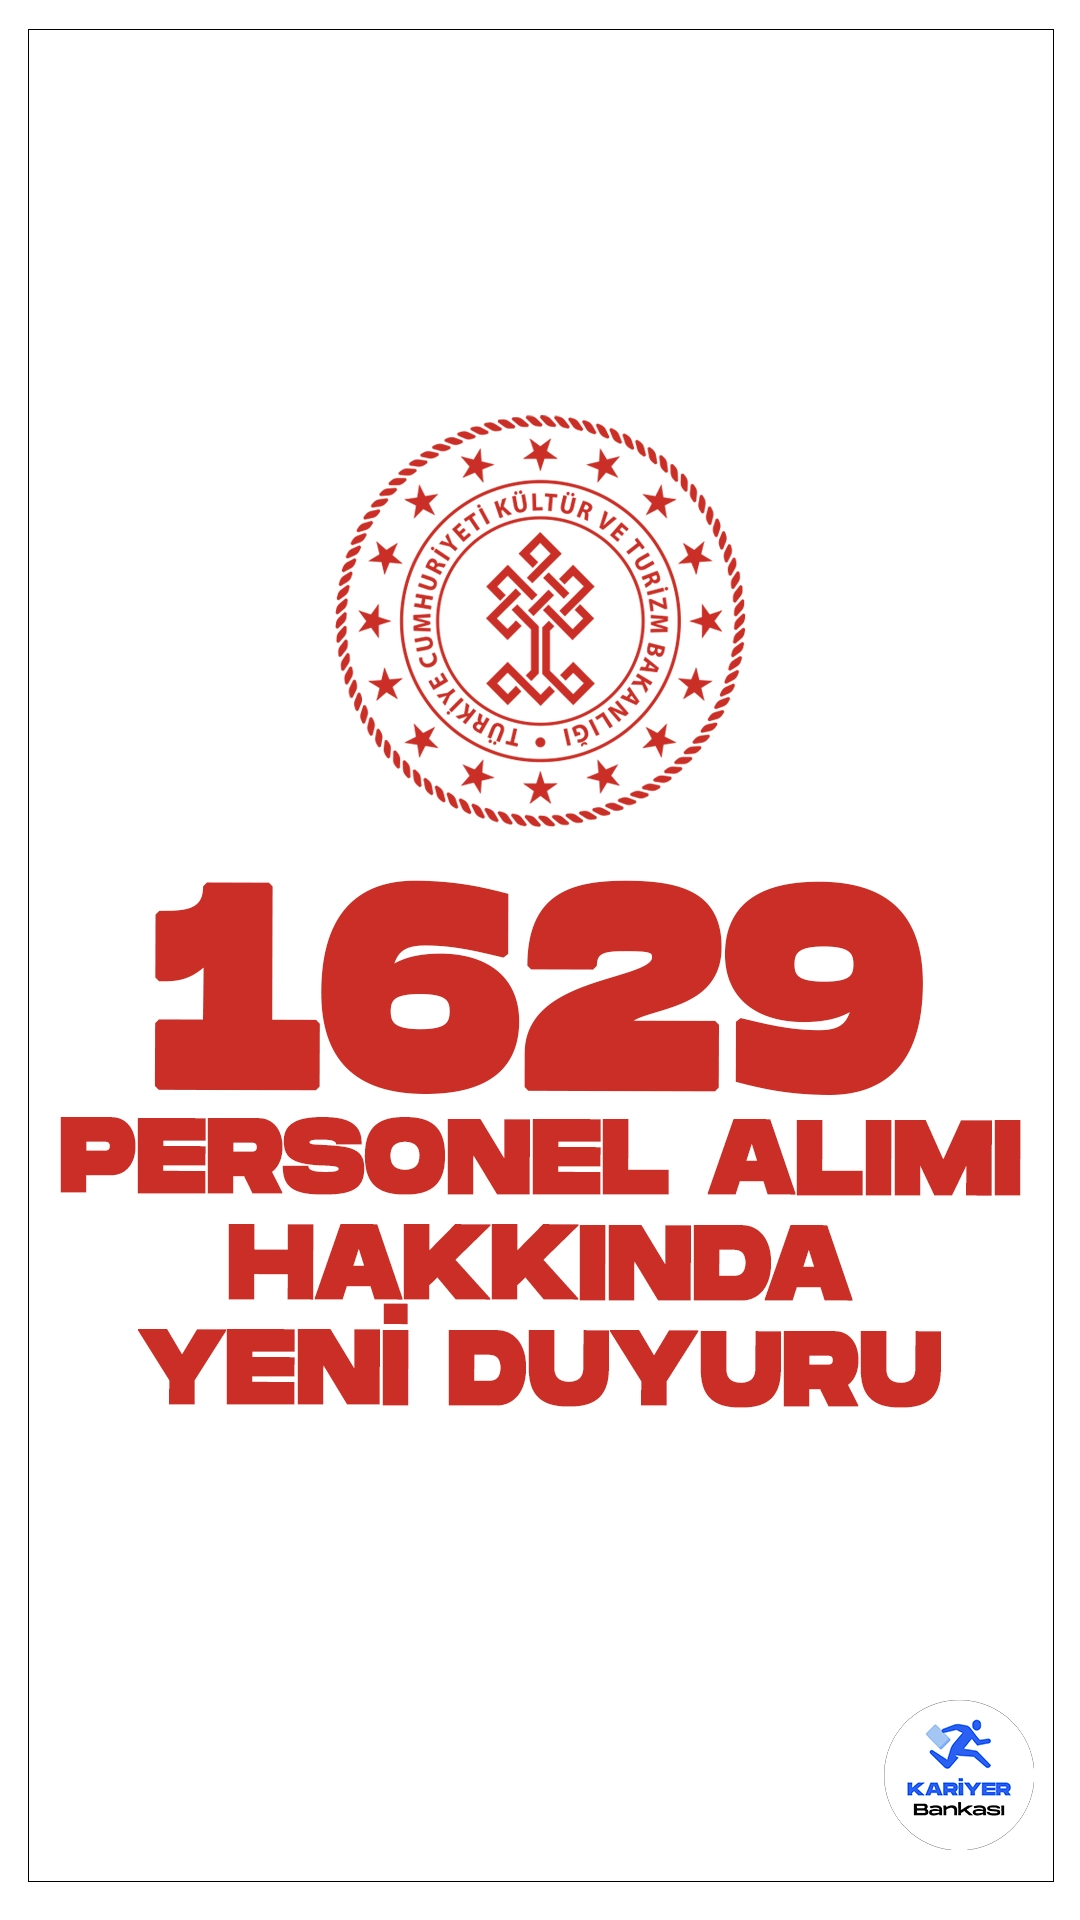 Kültür ve Turizm Bakanlığı 1629 Personel Alımı Kapsamında Sınav Sonuç Duyurusu. Kültür ve Turizm Bakanlığı sayfasından yayımlanan duyuruda, 1629 personel alımı kapsamında kütüphaneci sözlü sınav sonuçlarının açıklandığı aktarıldı.